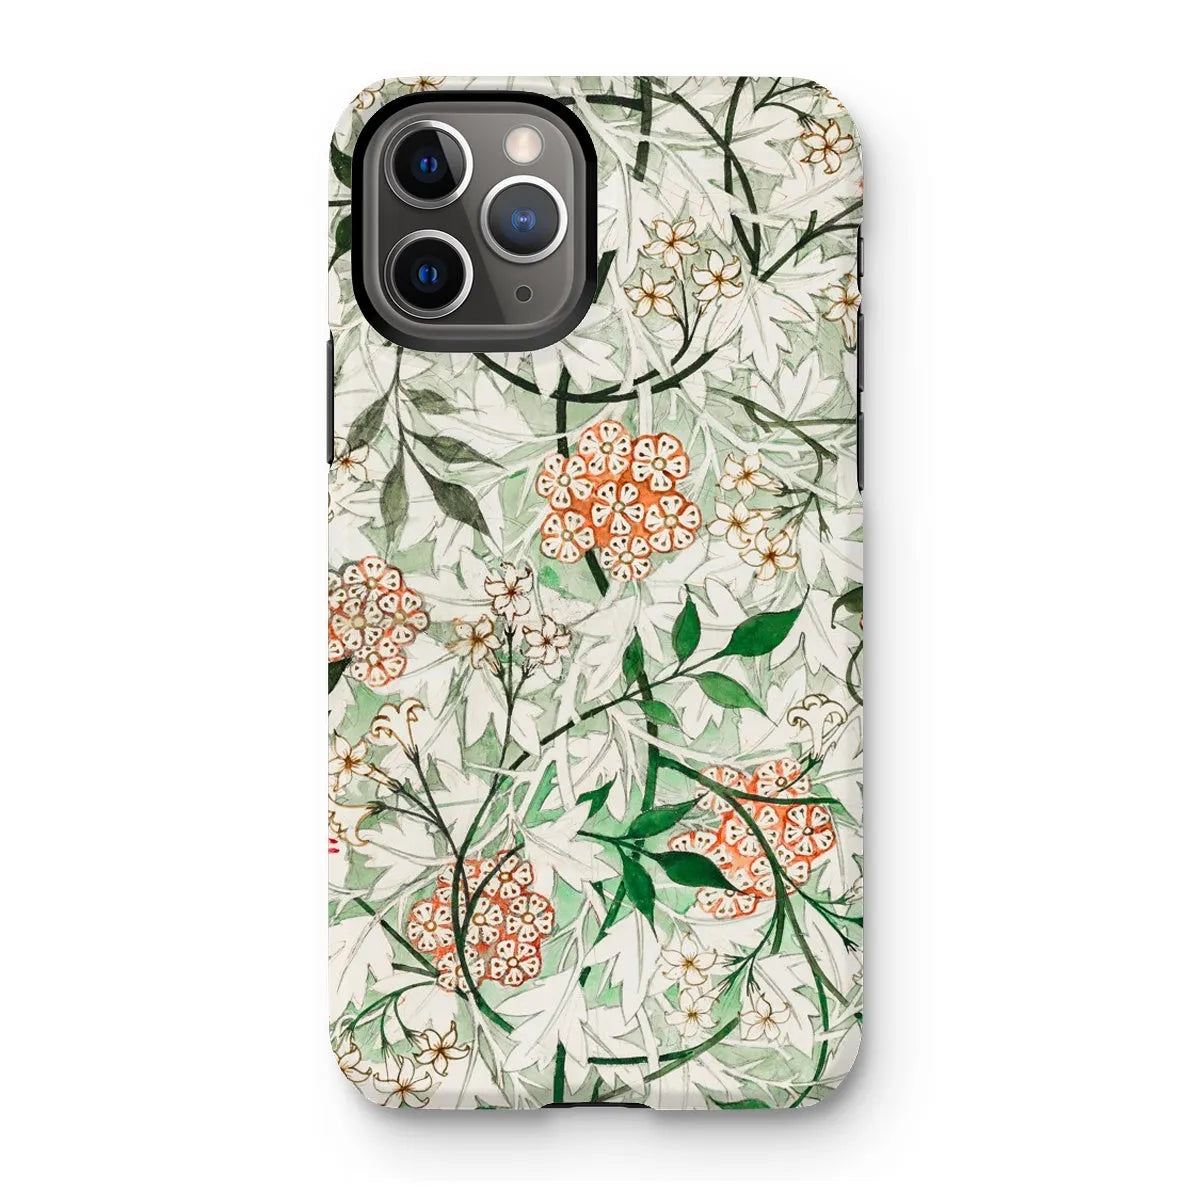 Jasmine Floral Aesthetic Art Phone Case - William Morris - Iphone 11 Pro / Matte - Mobile Phone Cases - Aesthetic Art